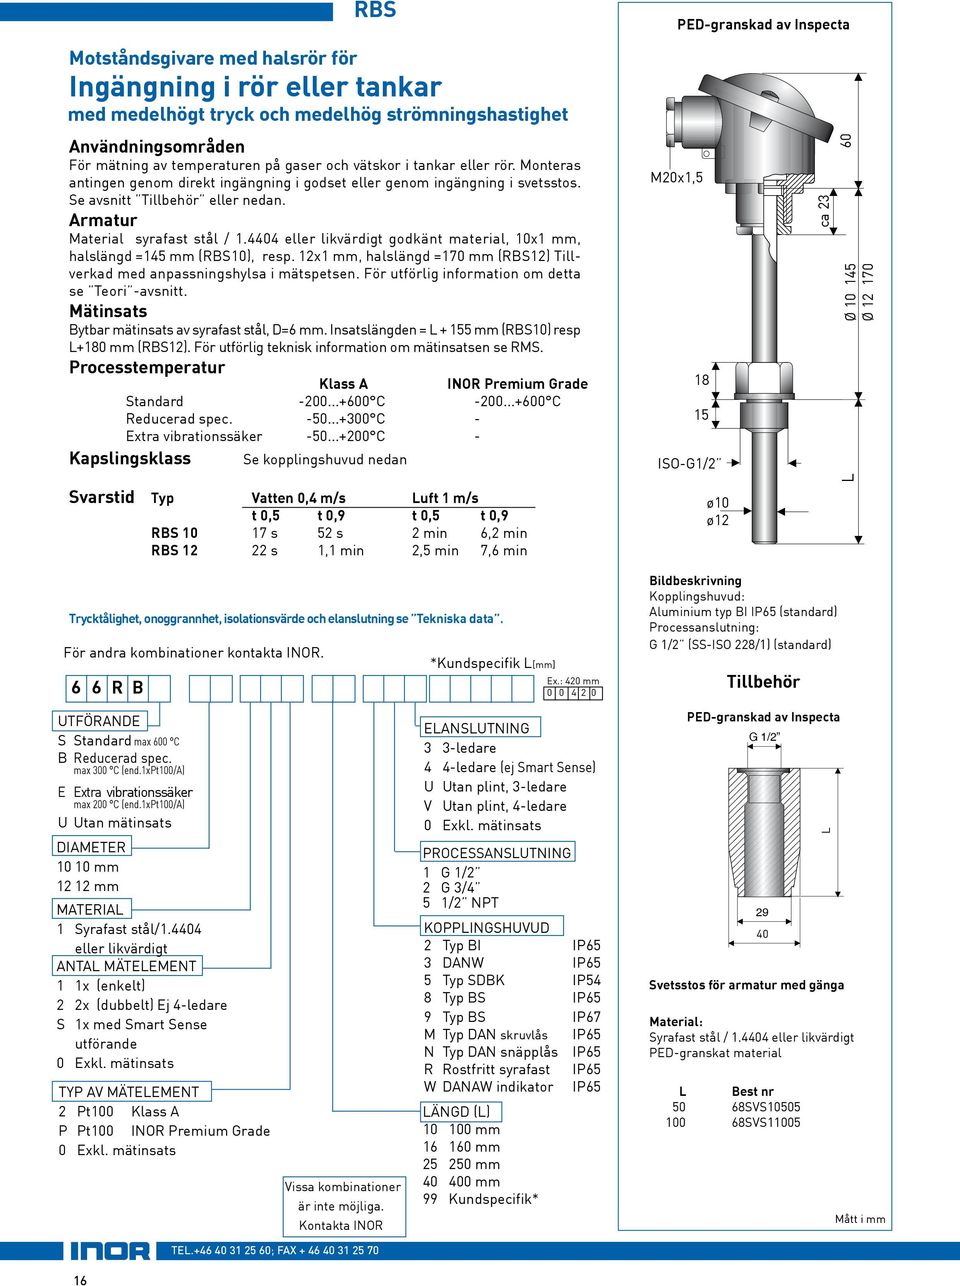 4404 eller likvärdigt godkänt material, 10x1 mm, halslängd =145 mm (RBS10), resp. 12x1 mm, halslängd =170 mm (RBS12) Tillverkad med anpassningshylsa i mätspetsen.